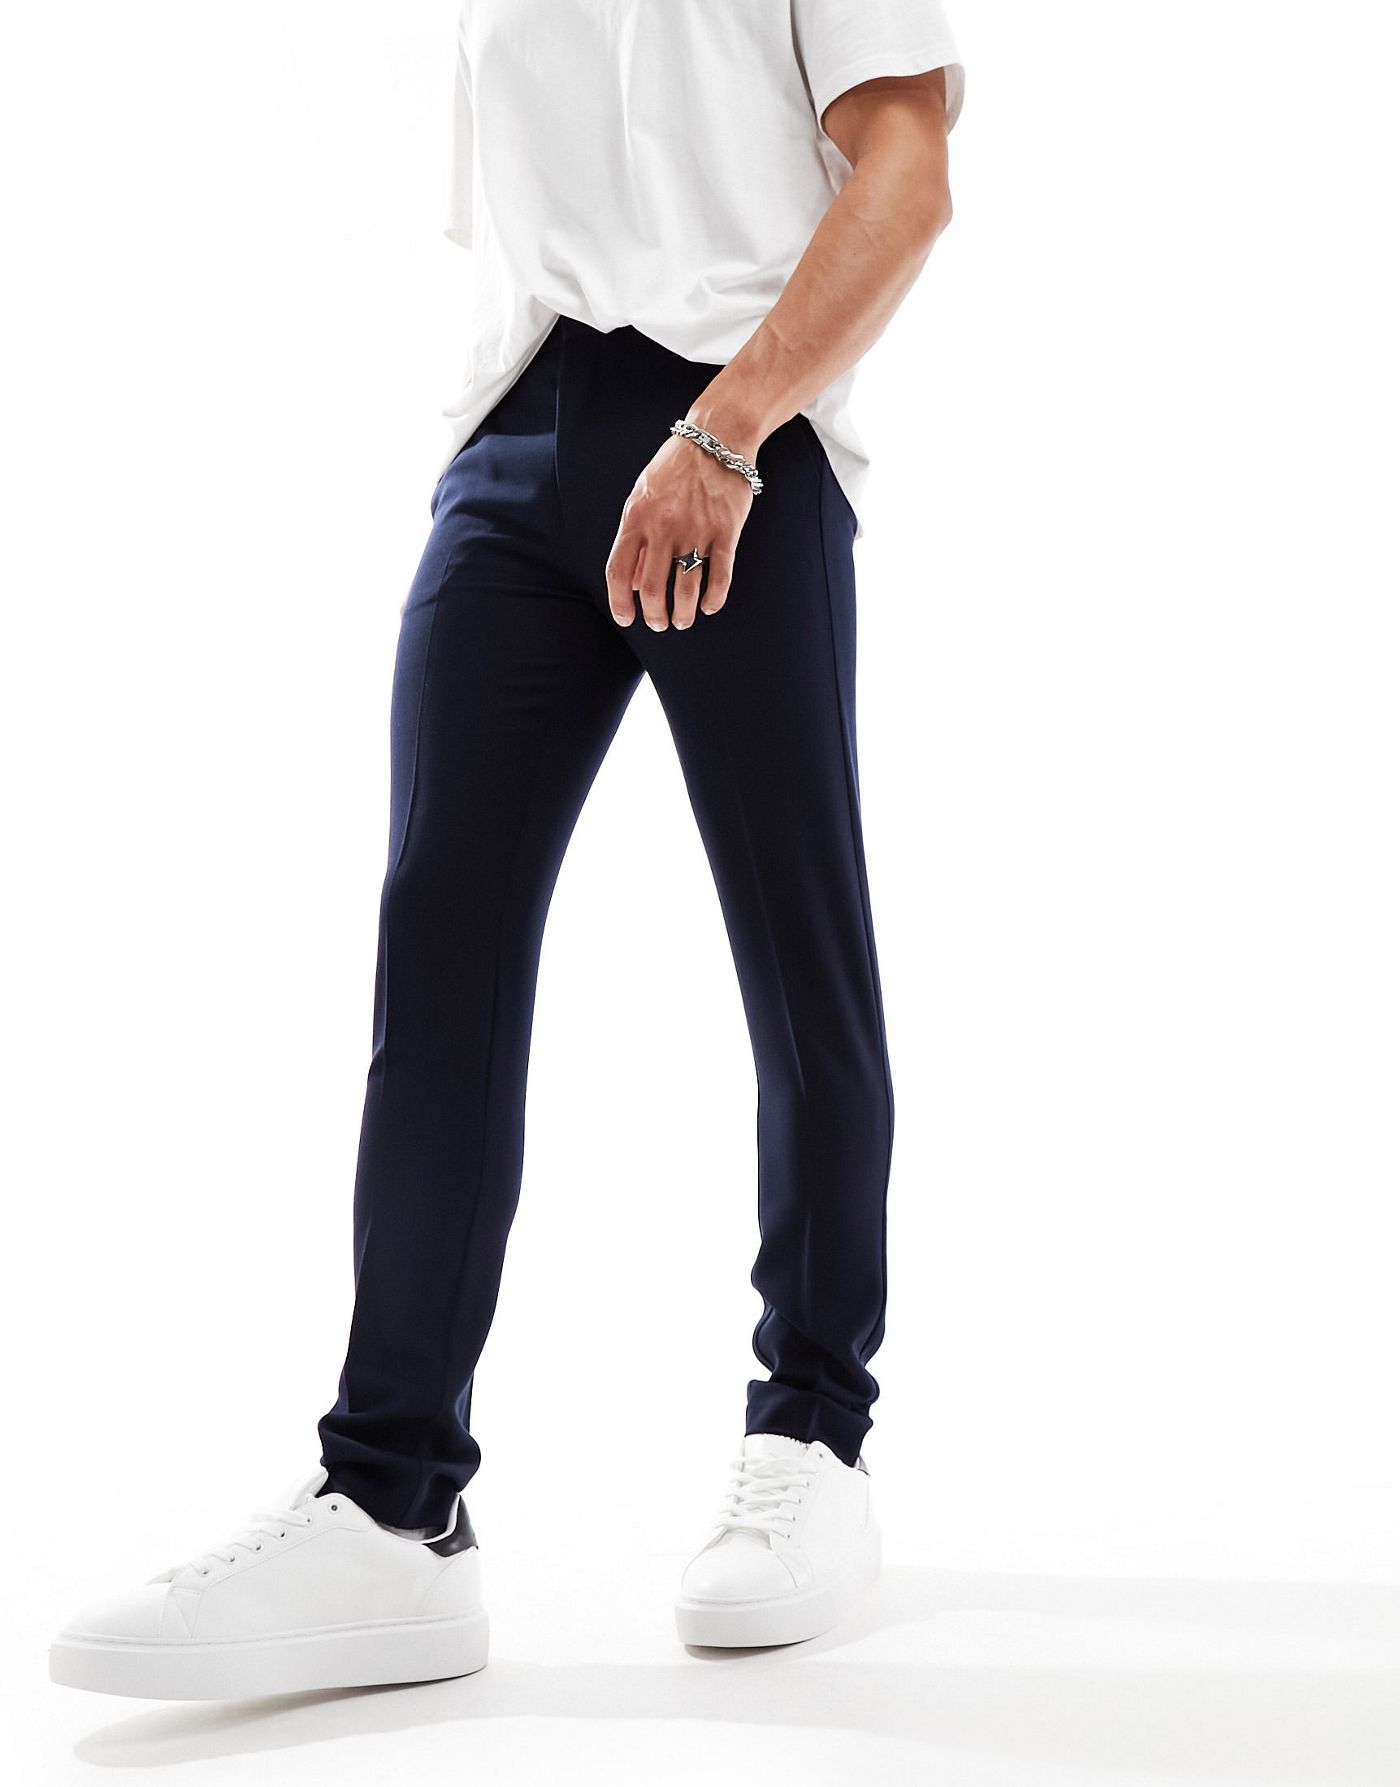 ASOS DESIGN skinny smart trouser in navy